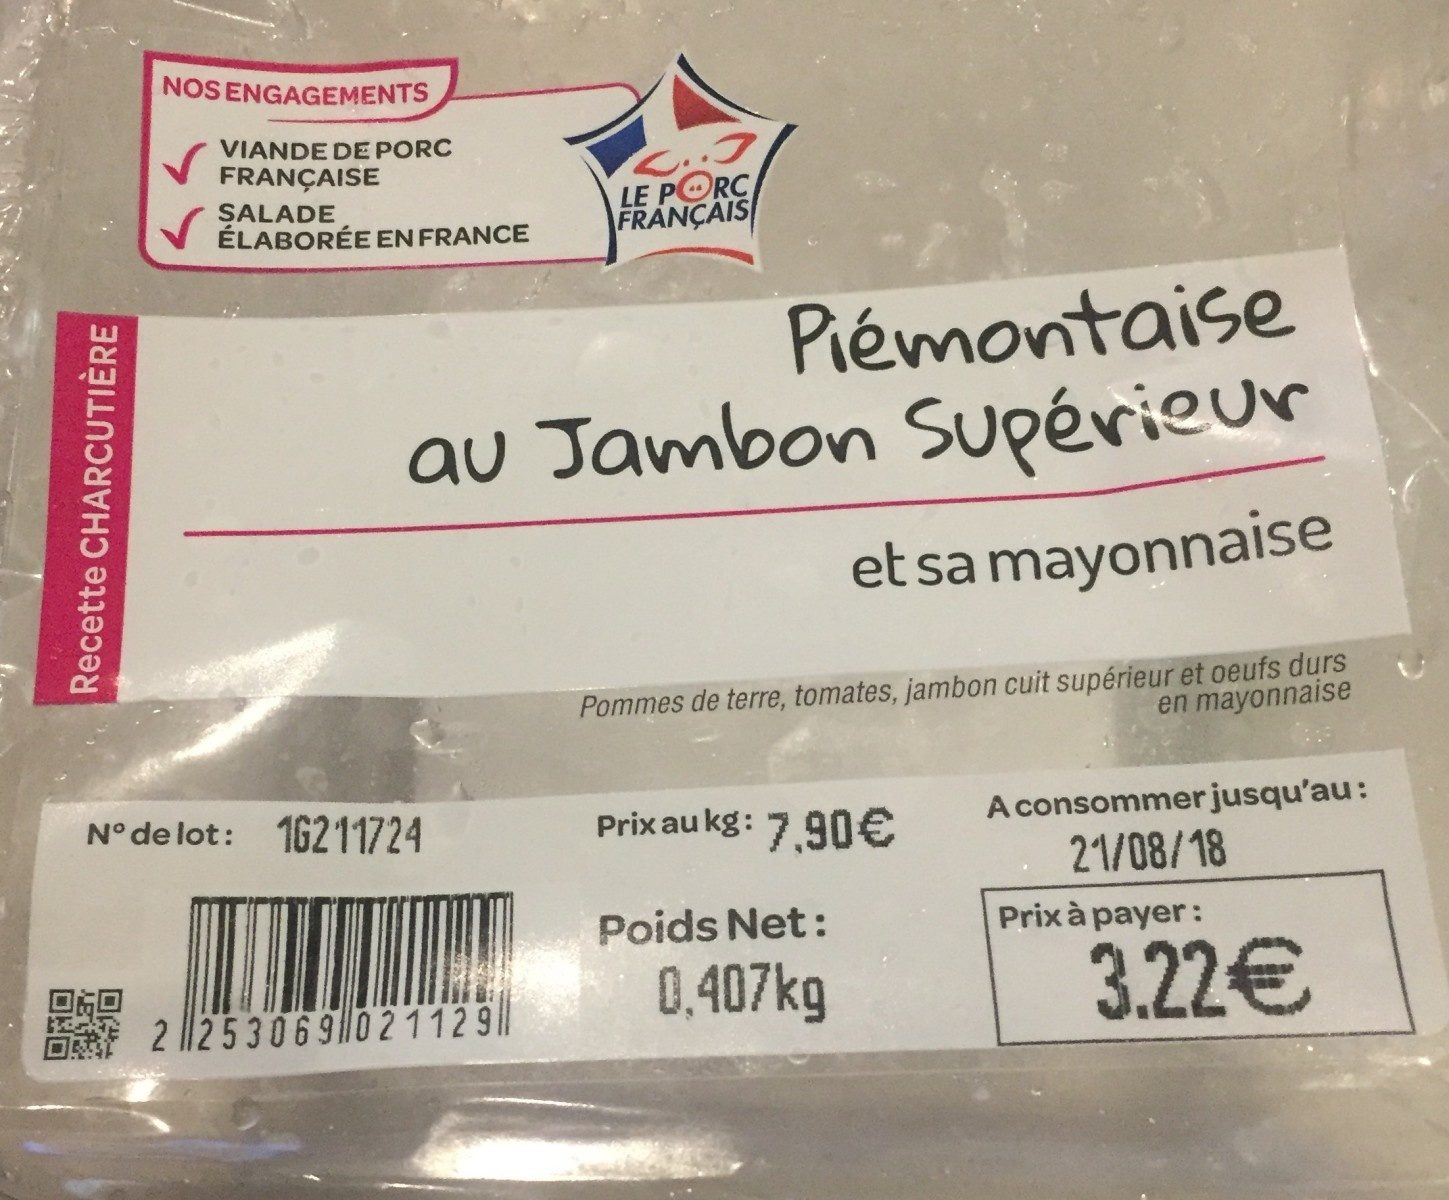 Piémontaise au jambon Supérieur - Product - fr